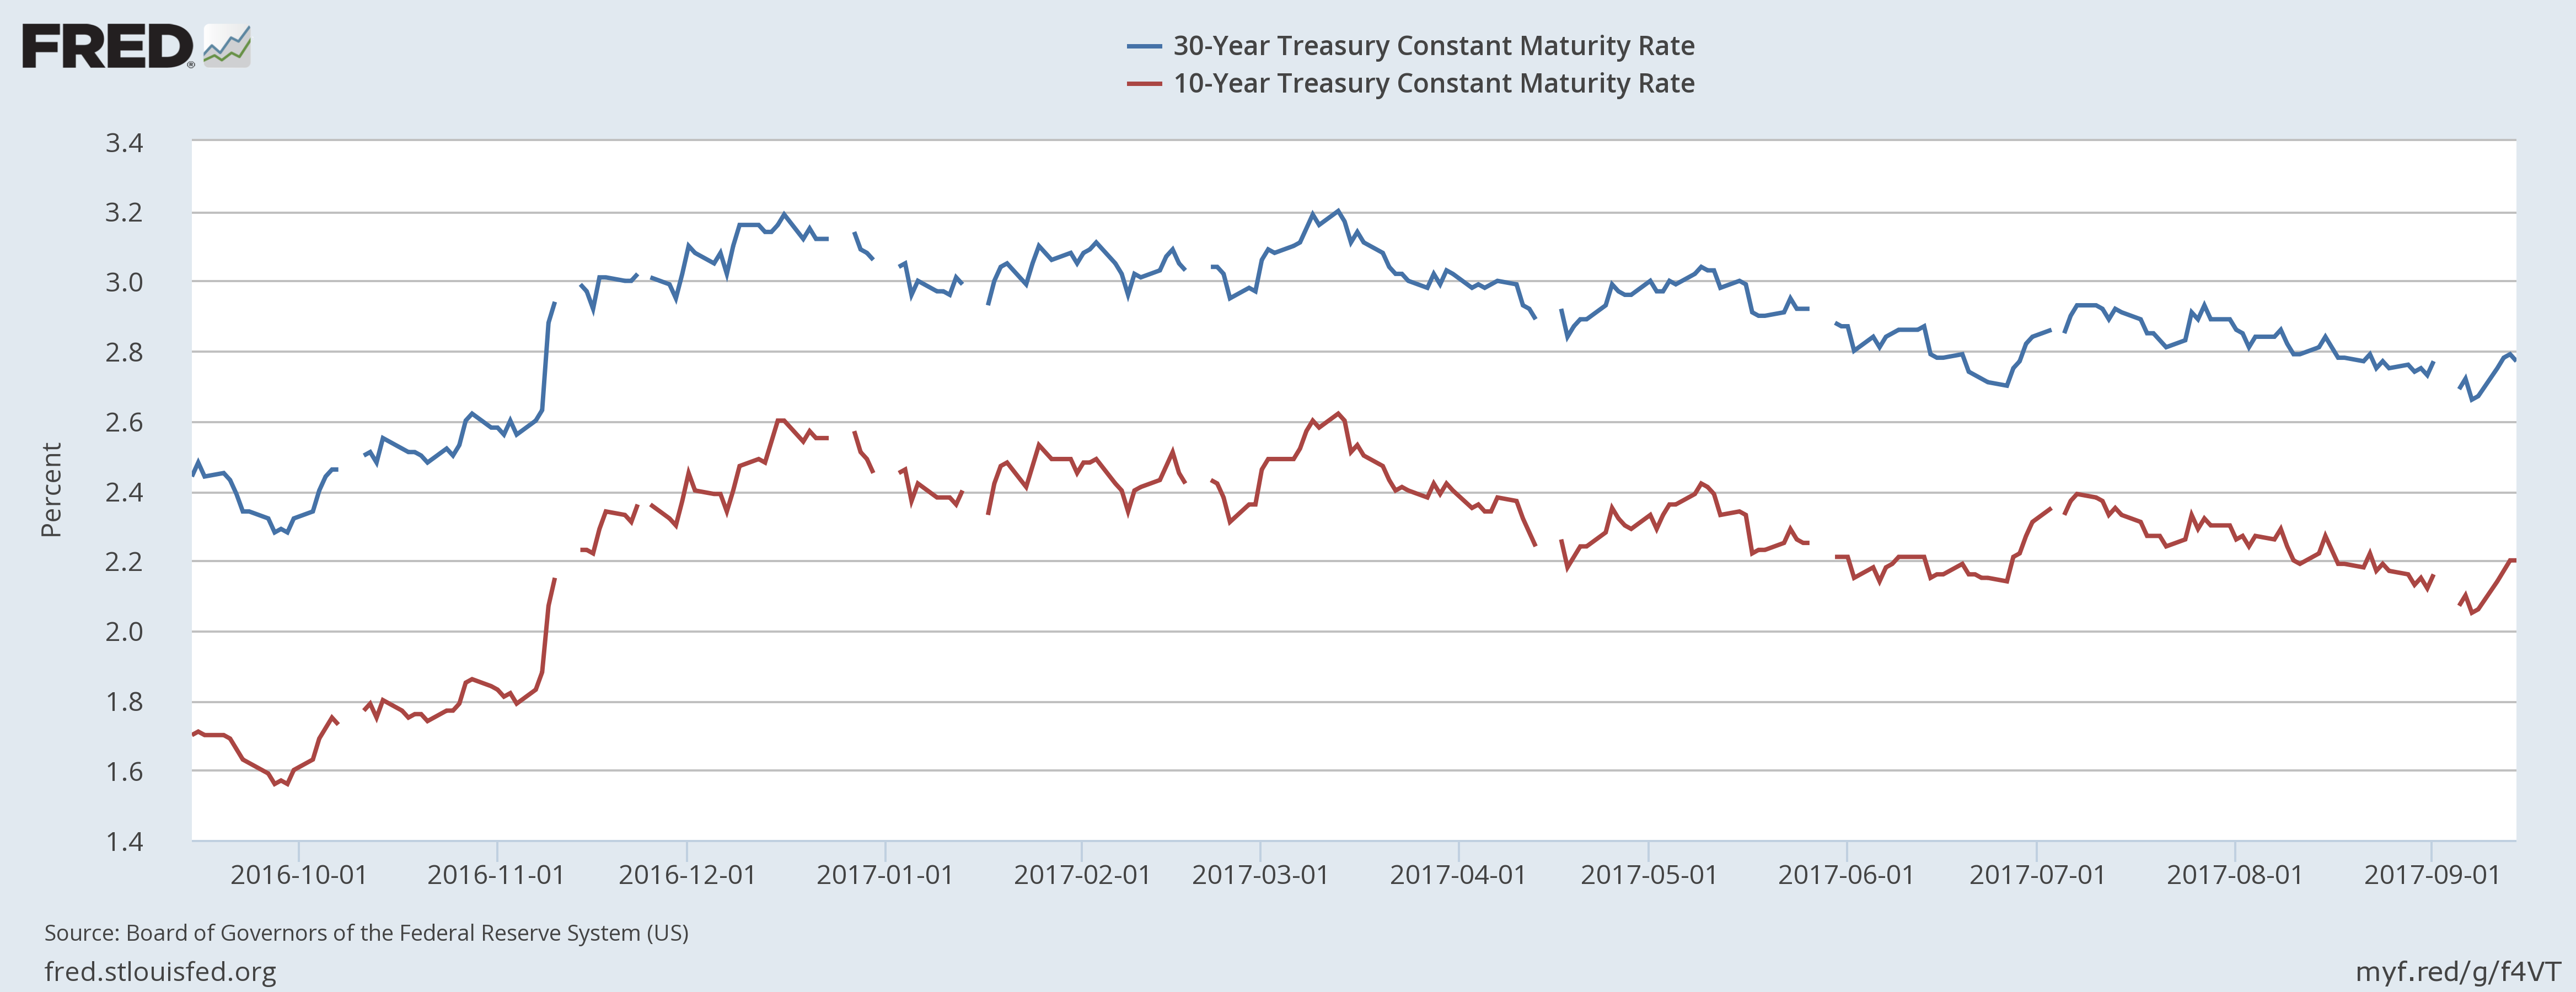 30-Y:10-Y Treasury Constant Maturity Rate 2016-2017